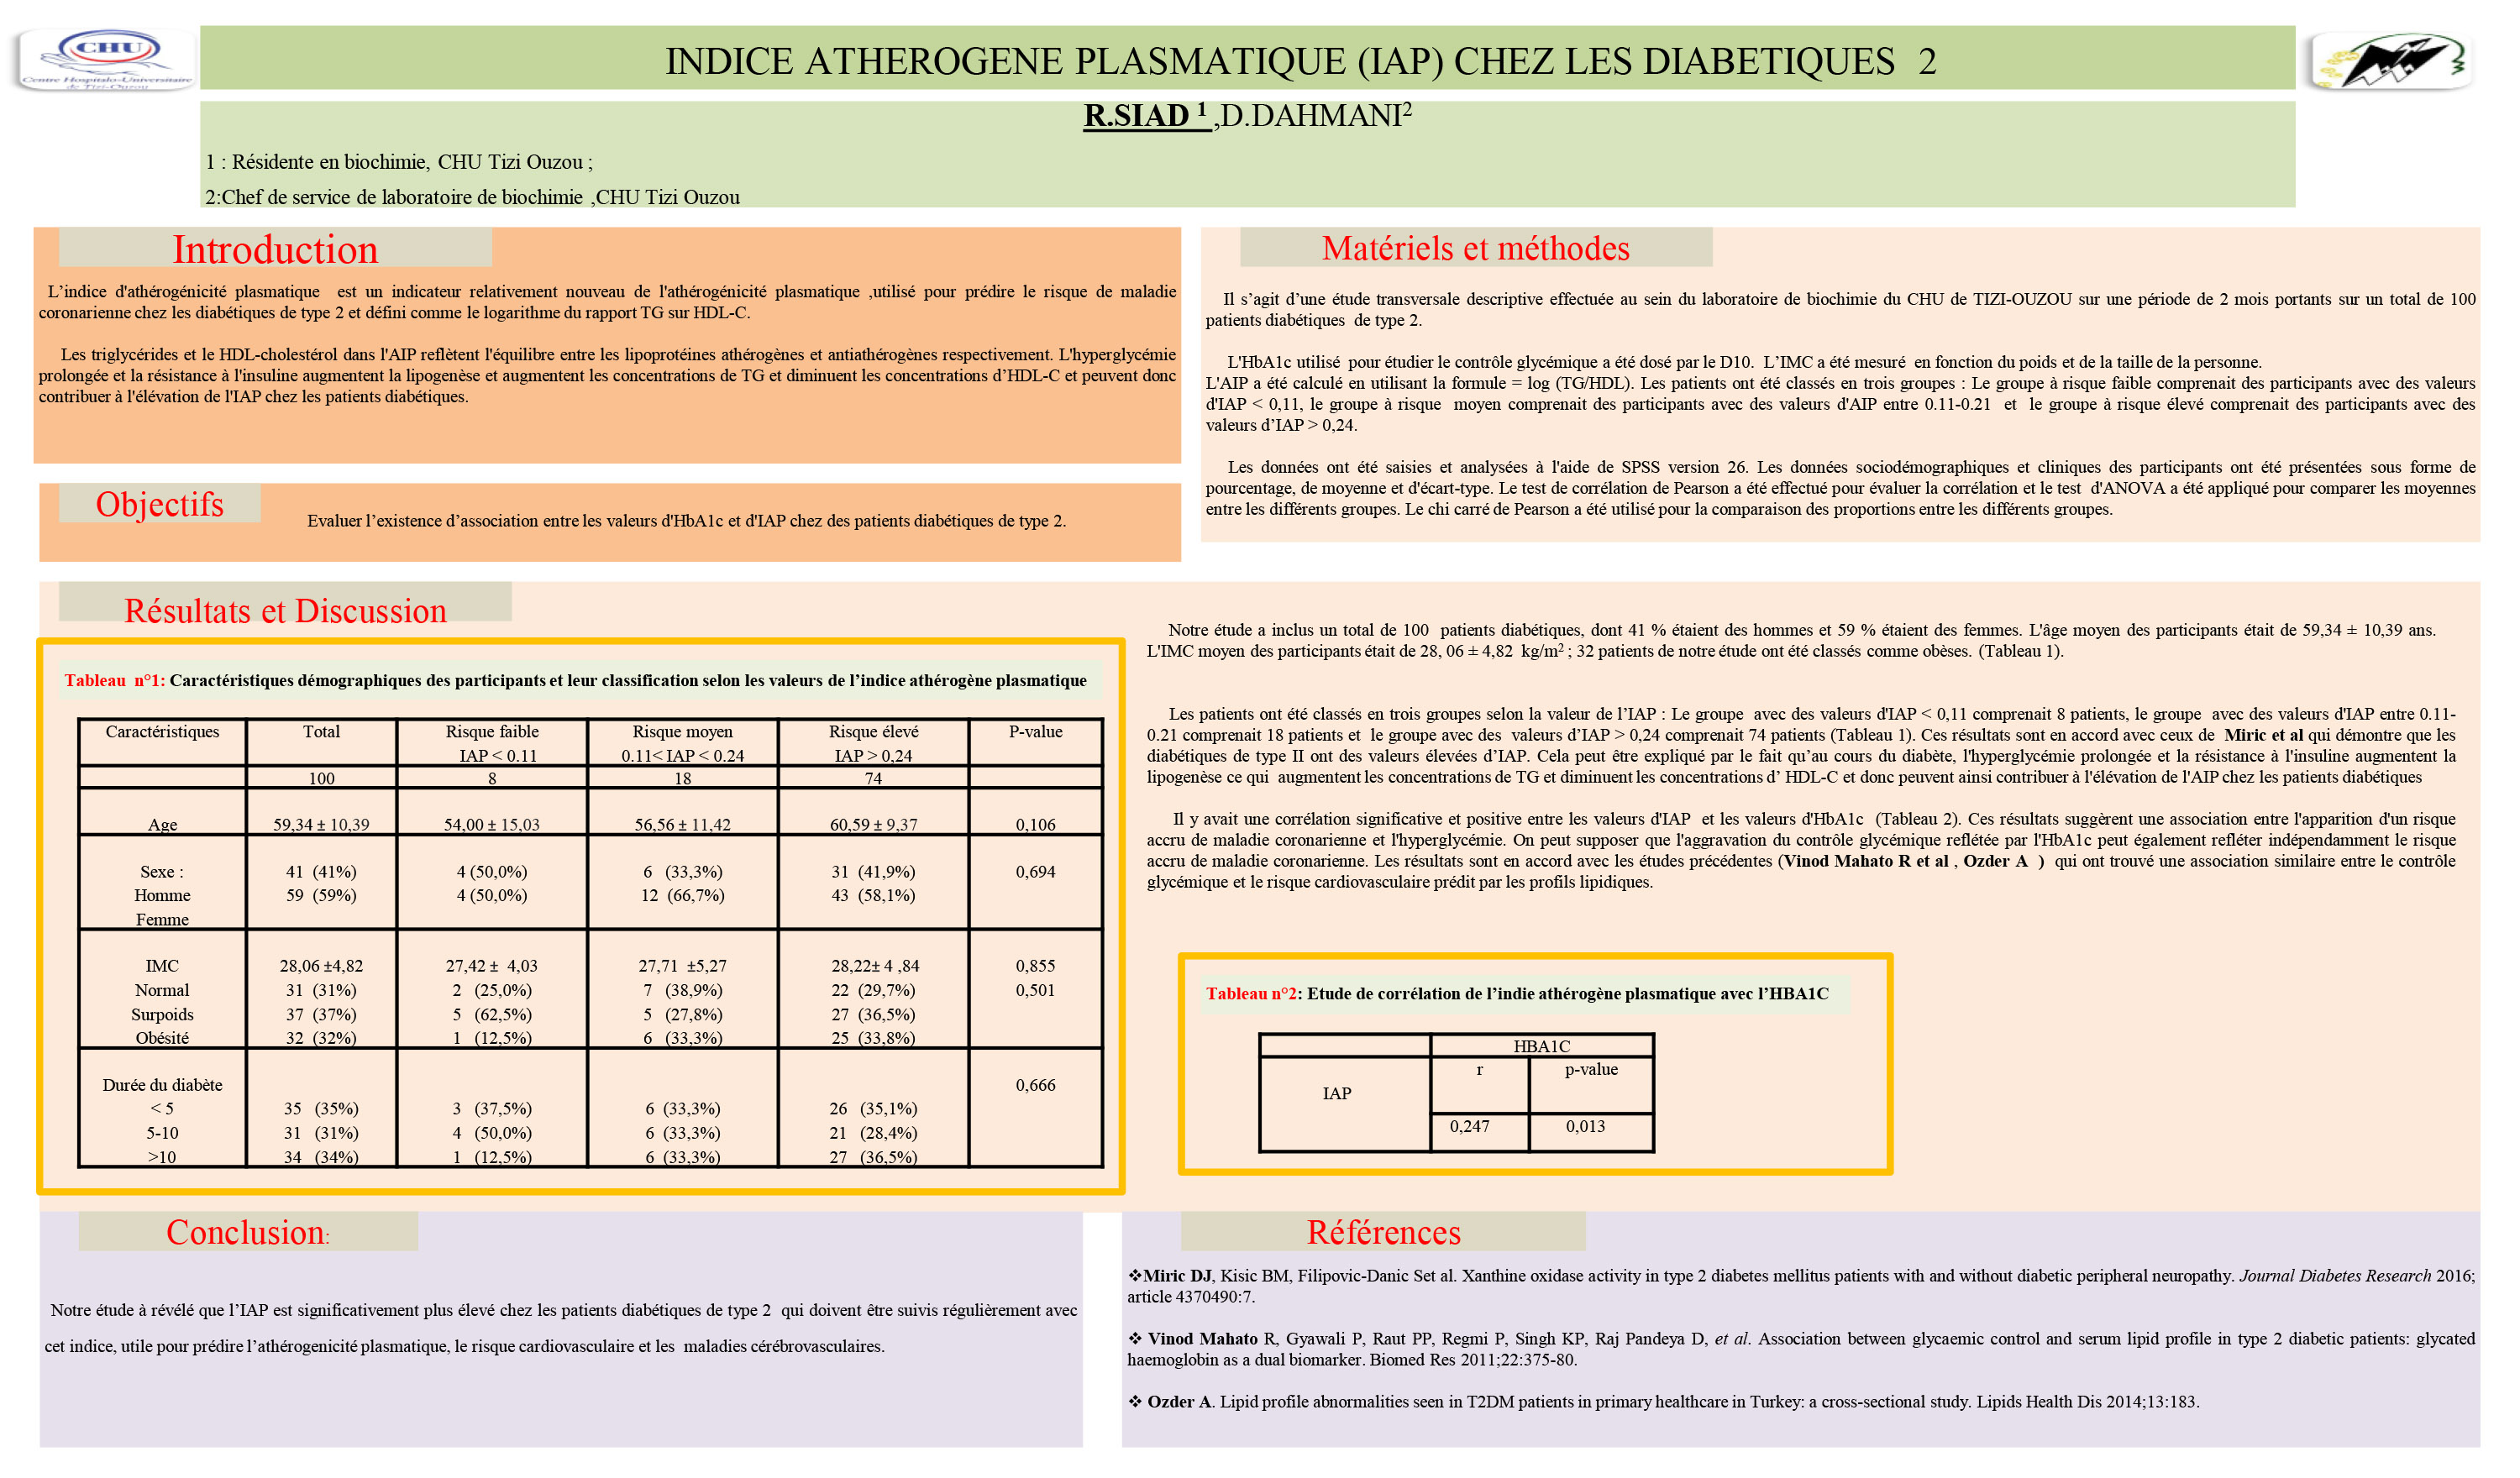 CARDIOVASCULAIRE : P32 - INDICE ATHEROGENE PLASMATIQUE (IAP) CHEZ LES DIABETIQUES  2